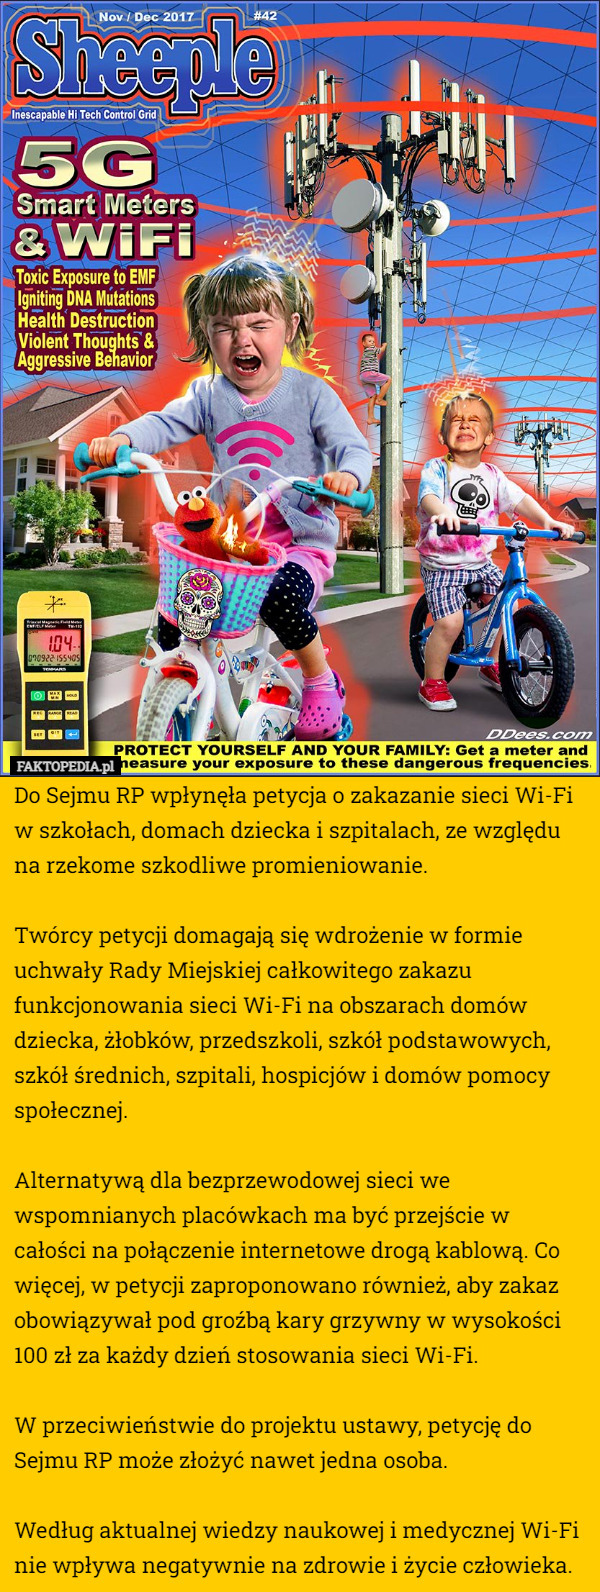 Do Sejmu RP wpłynęła petycja o zakazanie sieci Wi-Fi w szkołach, domach